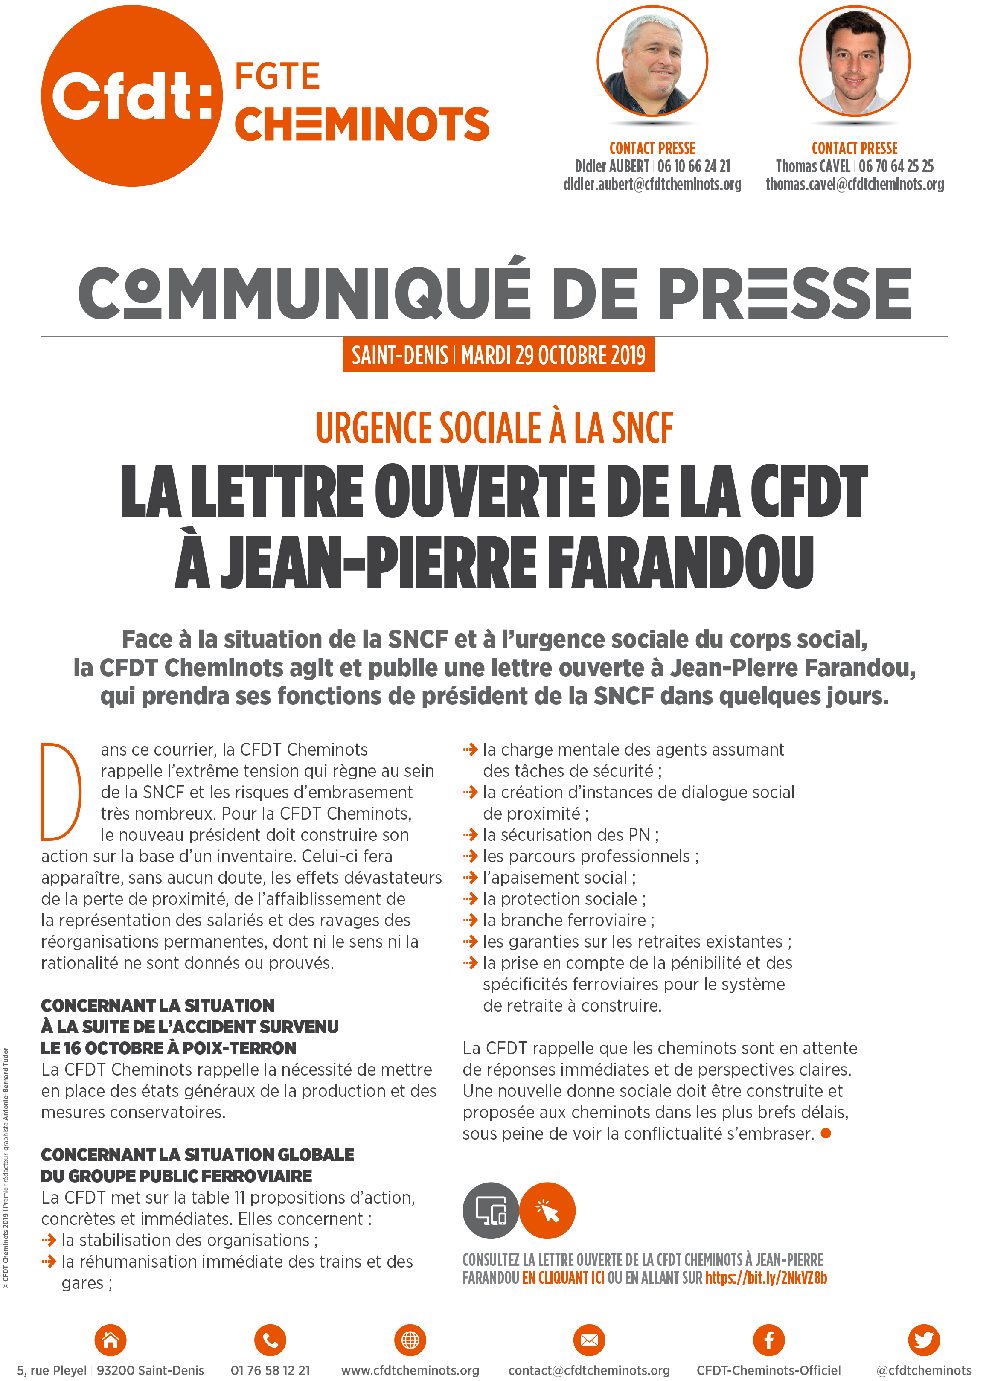 La lettre ouverte de la CFDT à Jean-Pierre Farandou